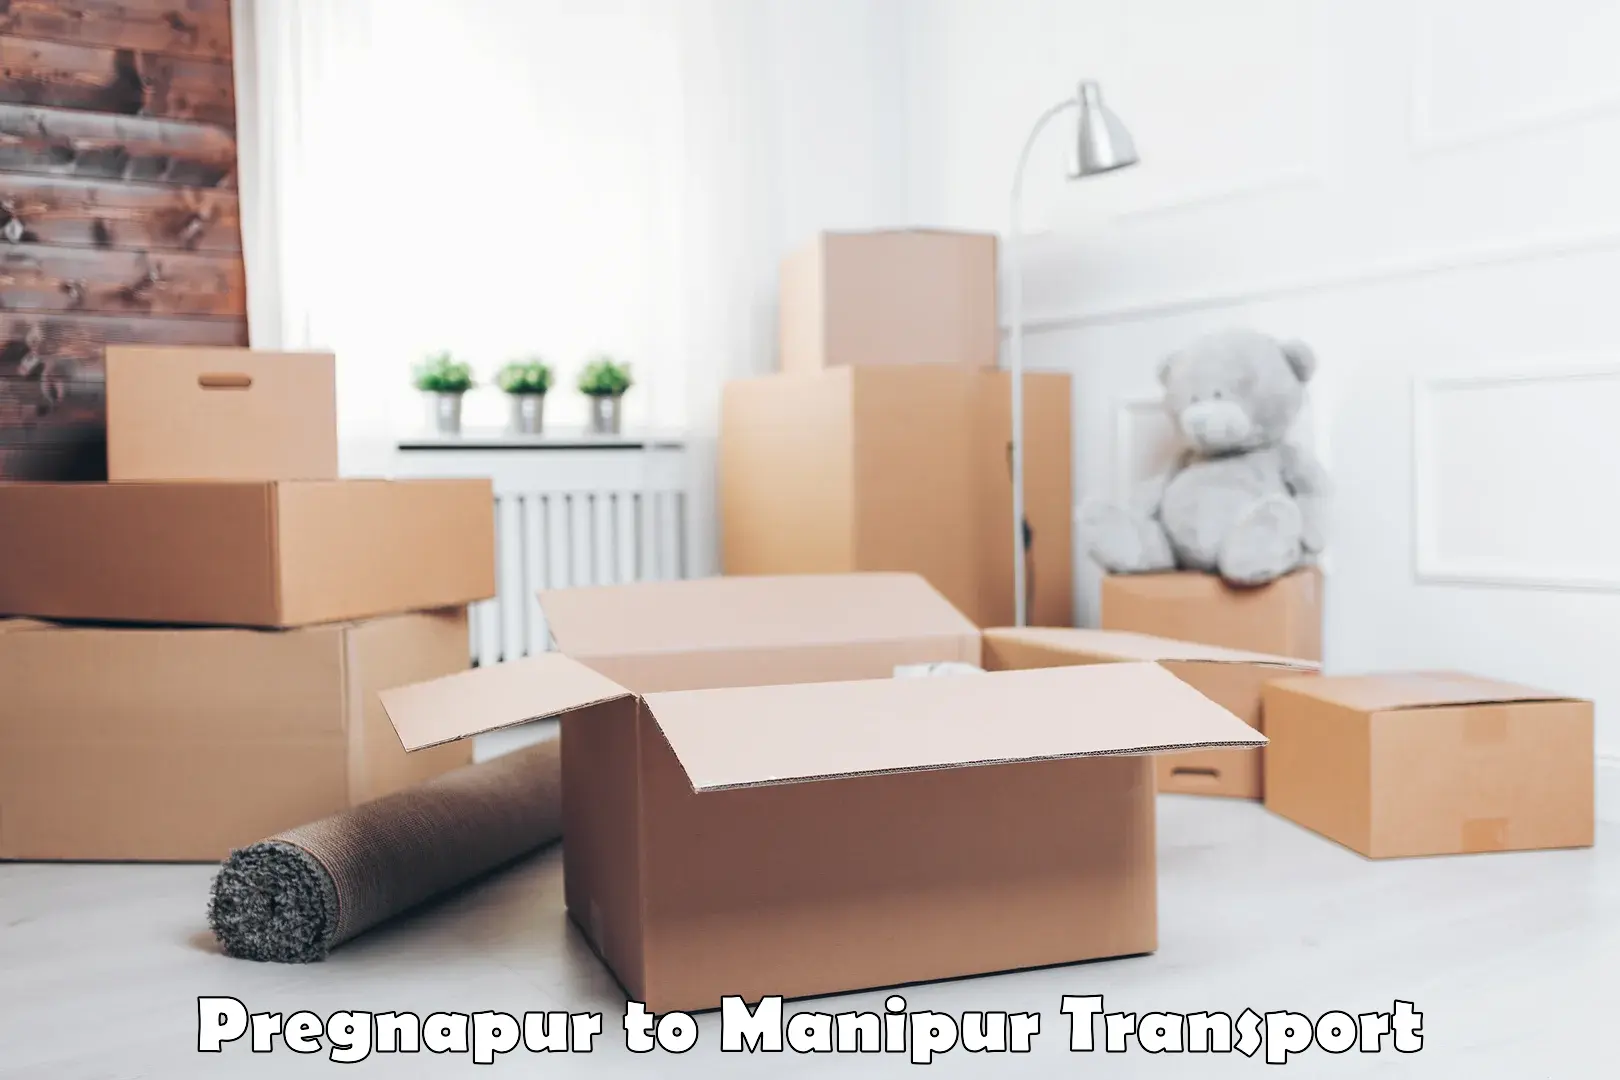 Lorry transport service Pregnapur to Senapati